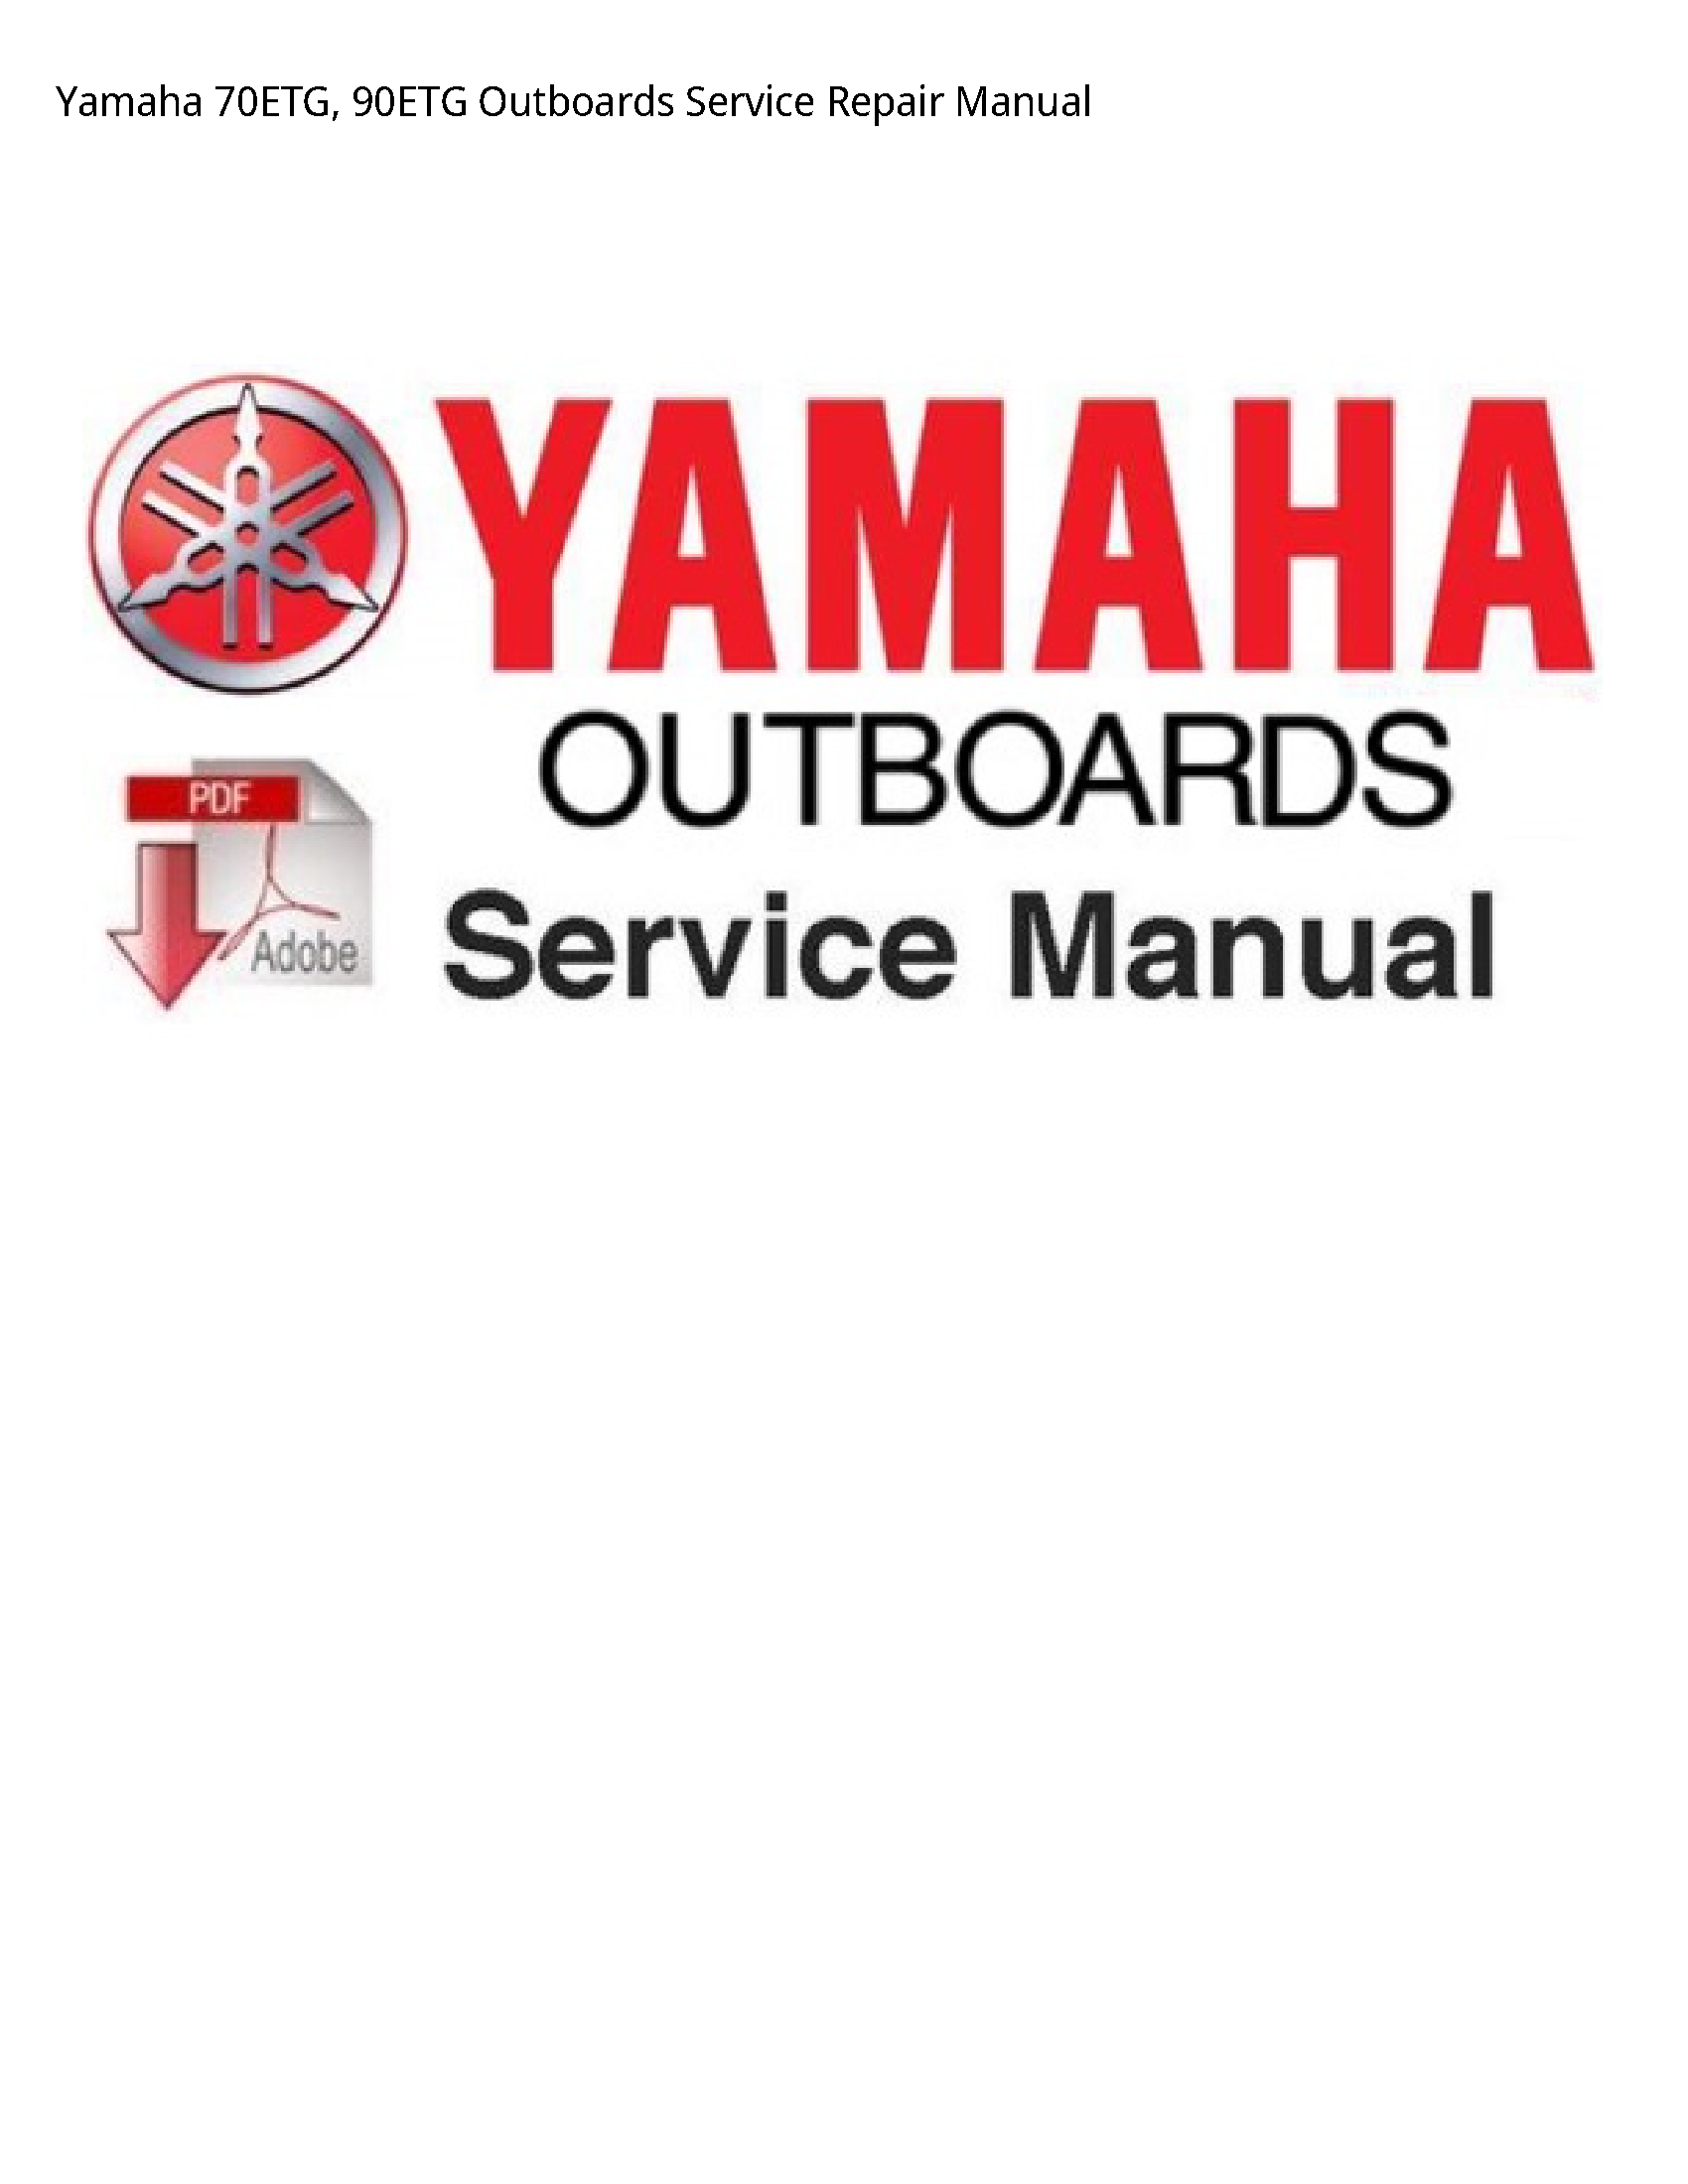 Yamaha 70ETG Outboards manual